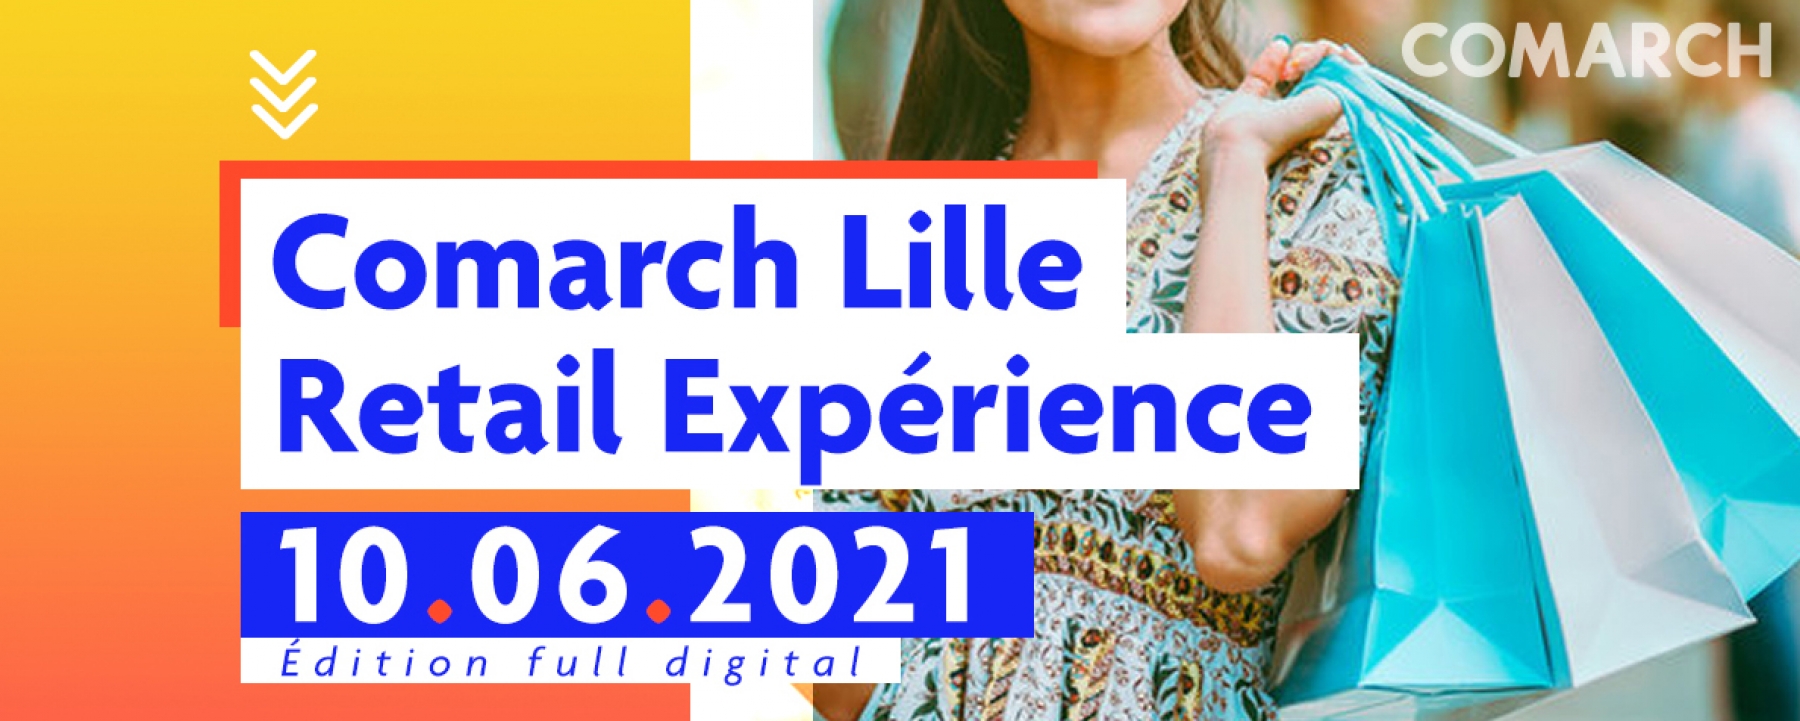 Comarch Live Retail Experience 2021, par Comarch France le 10 juin 2021